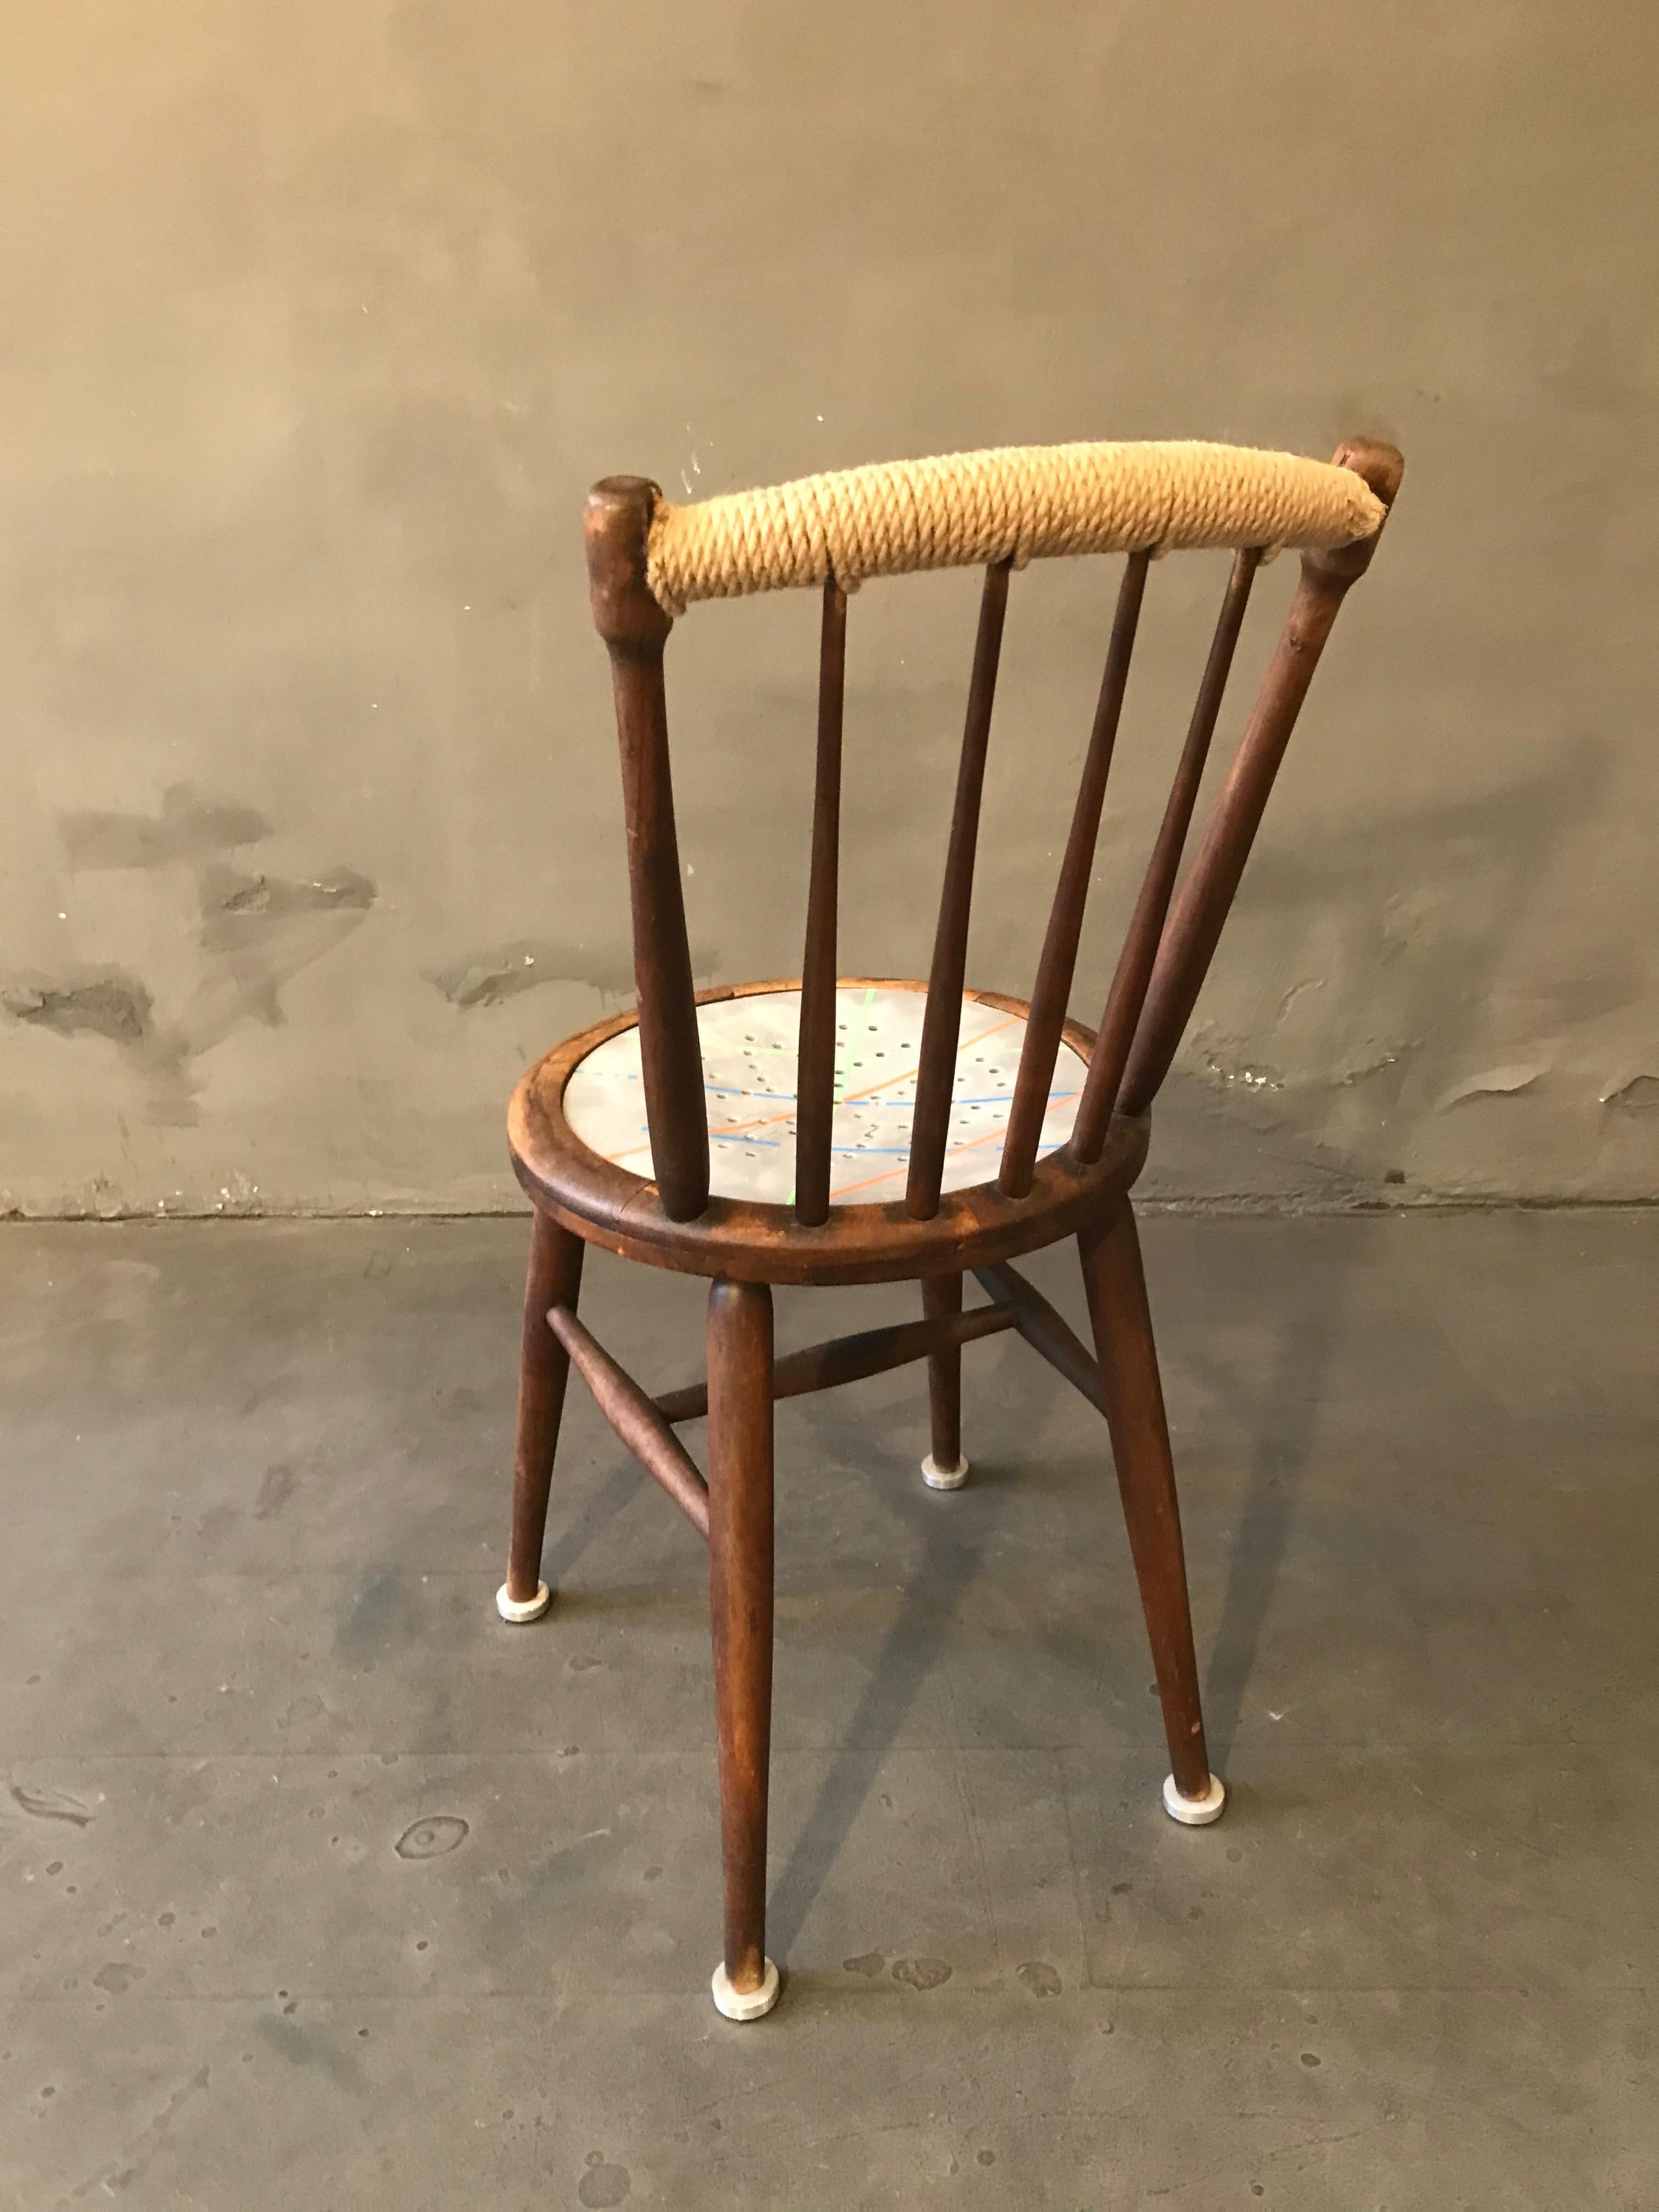 Chaise classique Thonet contemporaine de Markus Friedrich Staab, pieds additionnels ajoutés, siège peint à la main multi-lacqué.

J'apprends à partir d'un passé qui a été créé pour moi, une base pour construire mon propre travail.
Et créer de